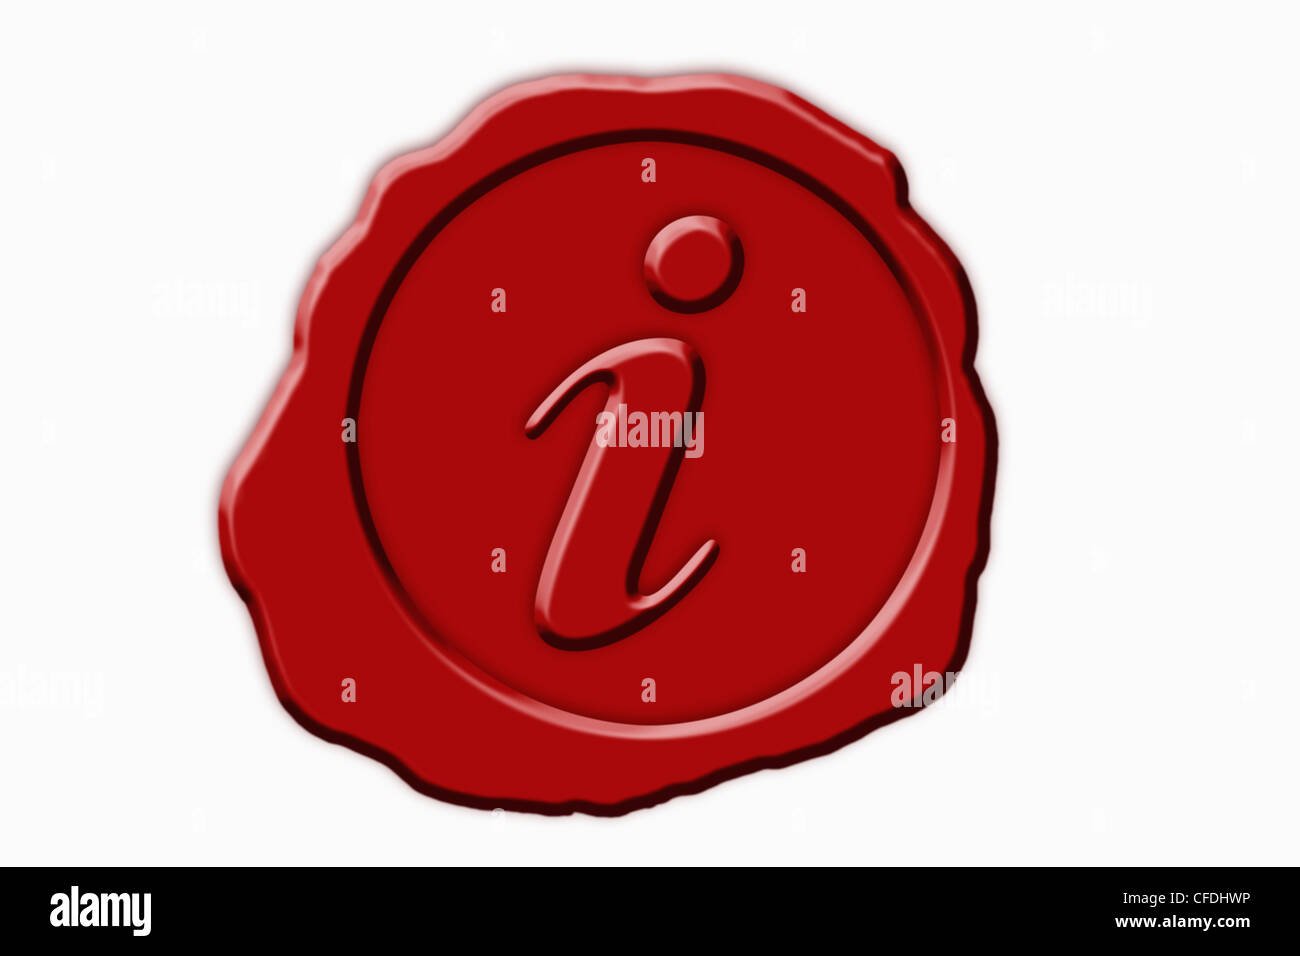 Dettaglio foto di un sigillo rosso con un simbolo al centro Foto Stock